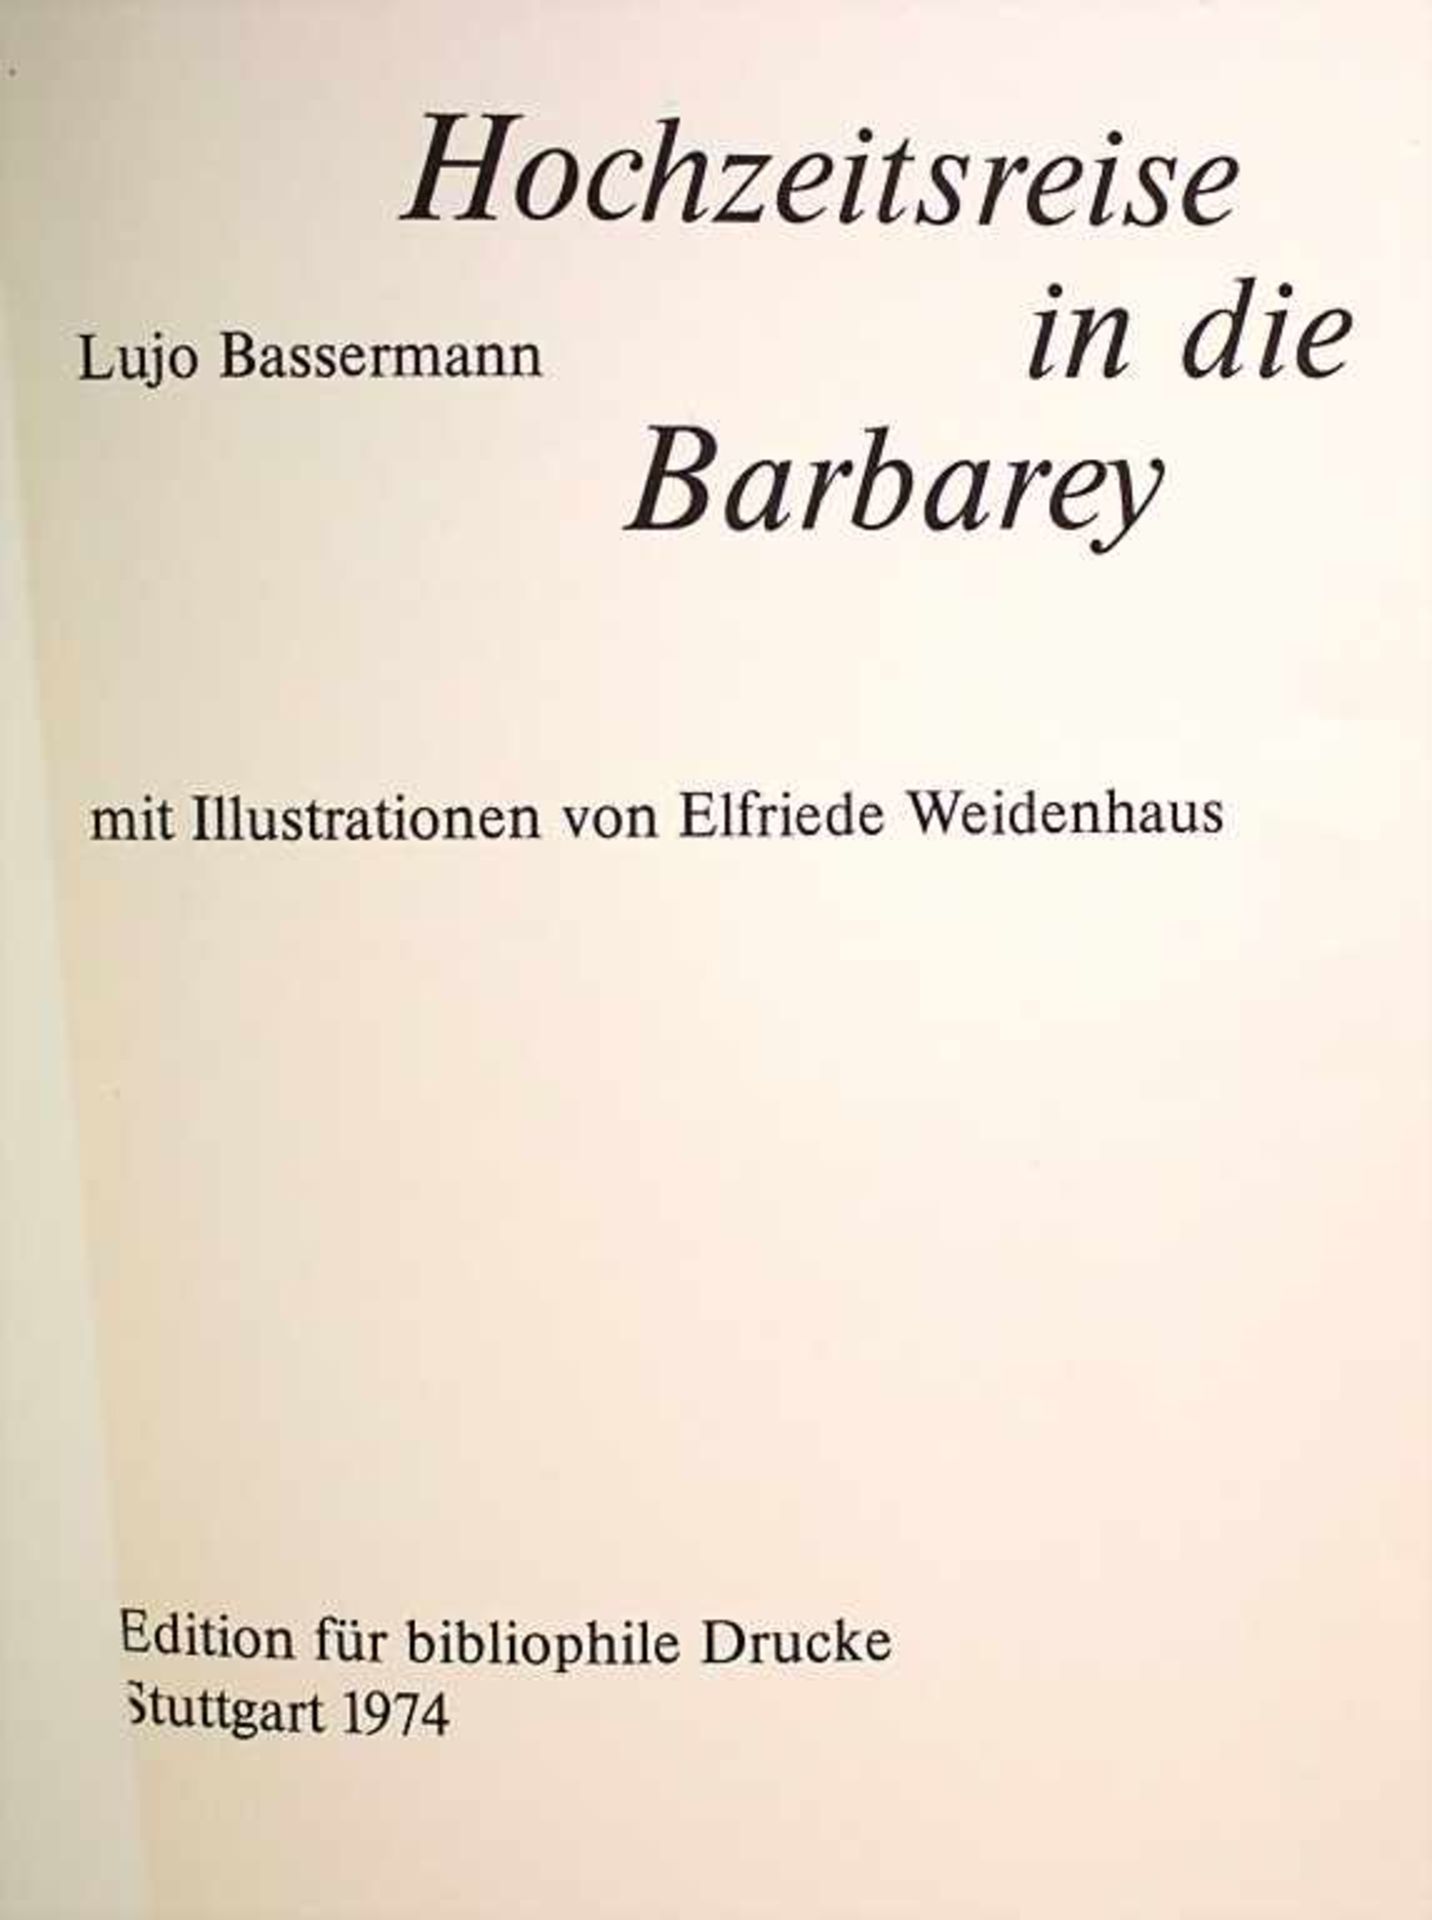 Lujo Bassermann: 3 Ausgaben 'Hochzeitsreise in die Barbarey', Stuttgart, 1974 - Image 2 of 4